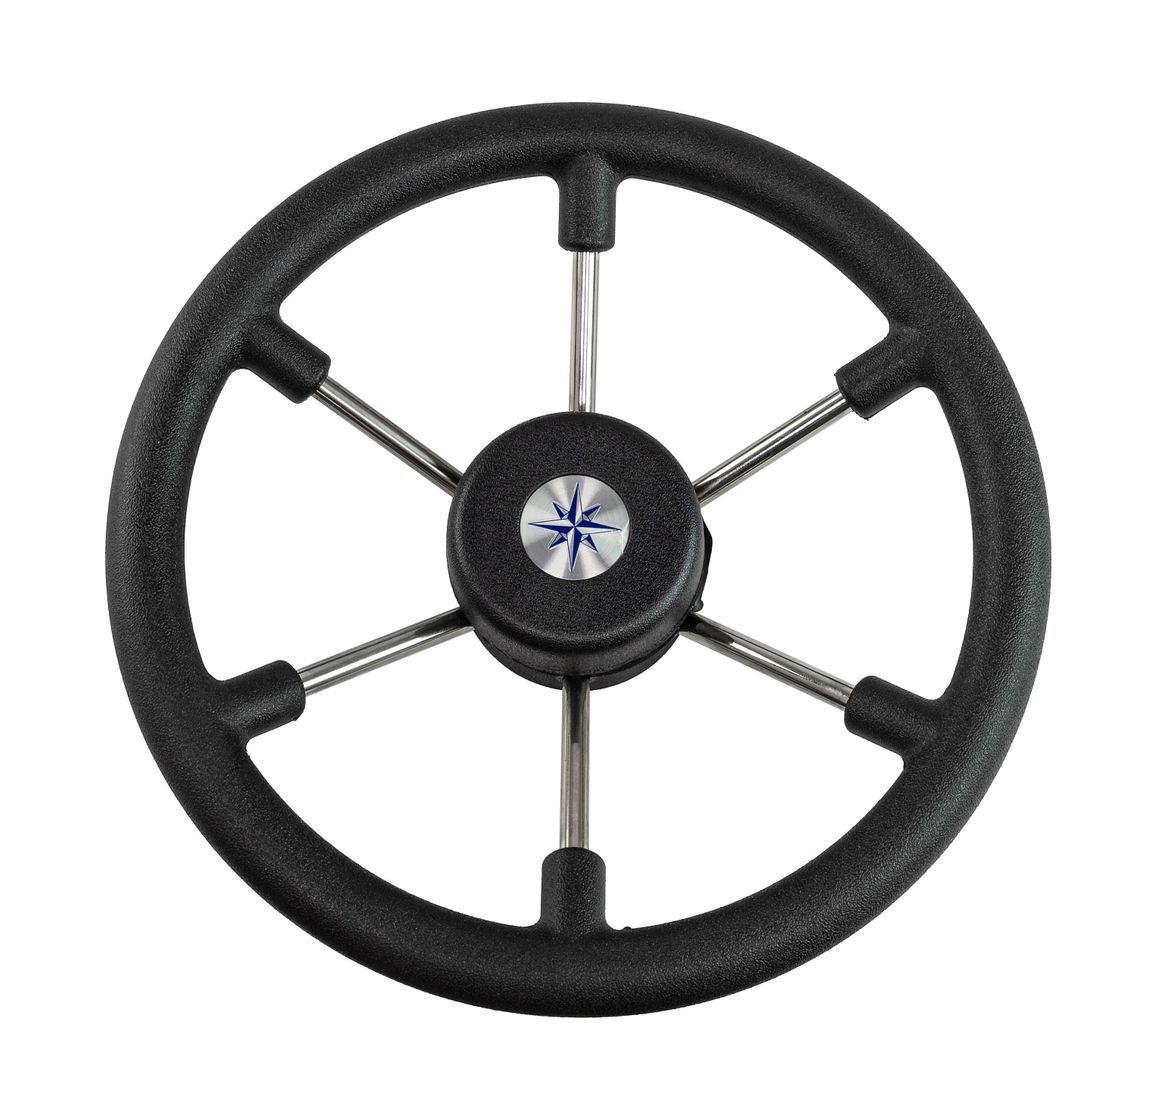 Рулевое колесо LEADER TANEGUM черный обод серебряные спицы д. 330 мм Volanti Luisi VN7330-01